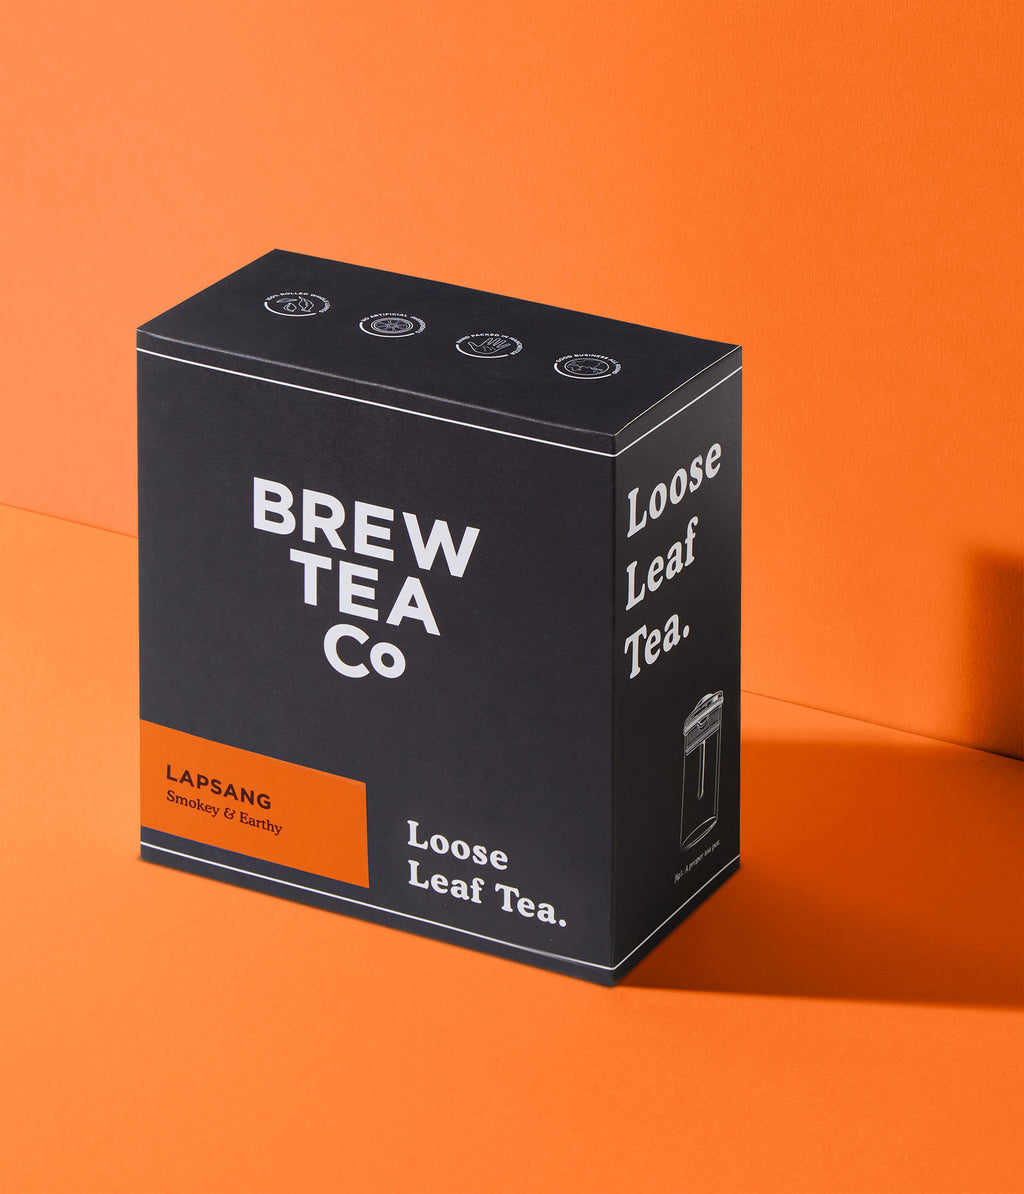 Lapsang - Loose Leaf Tea